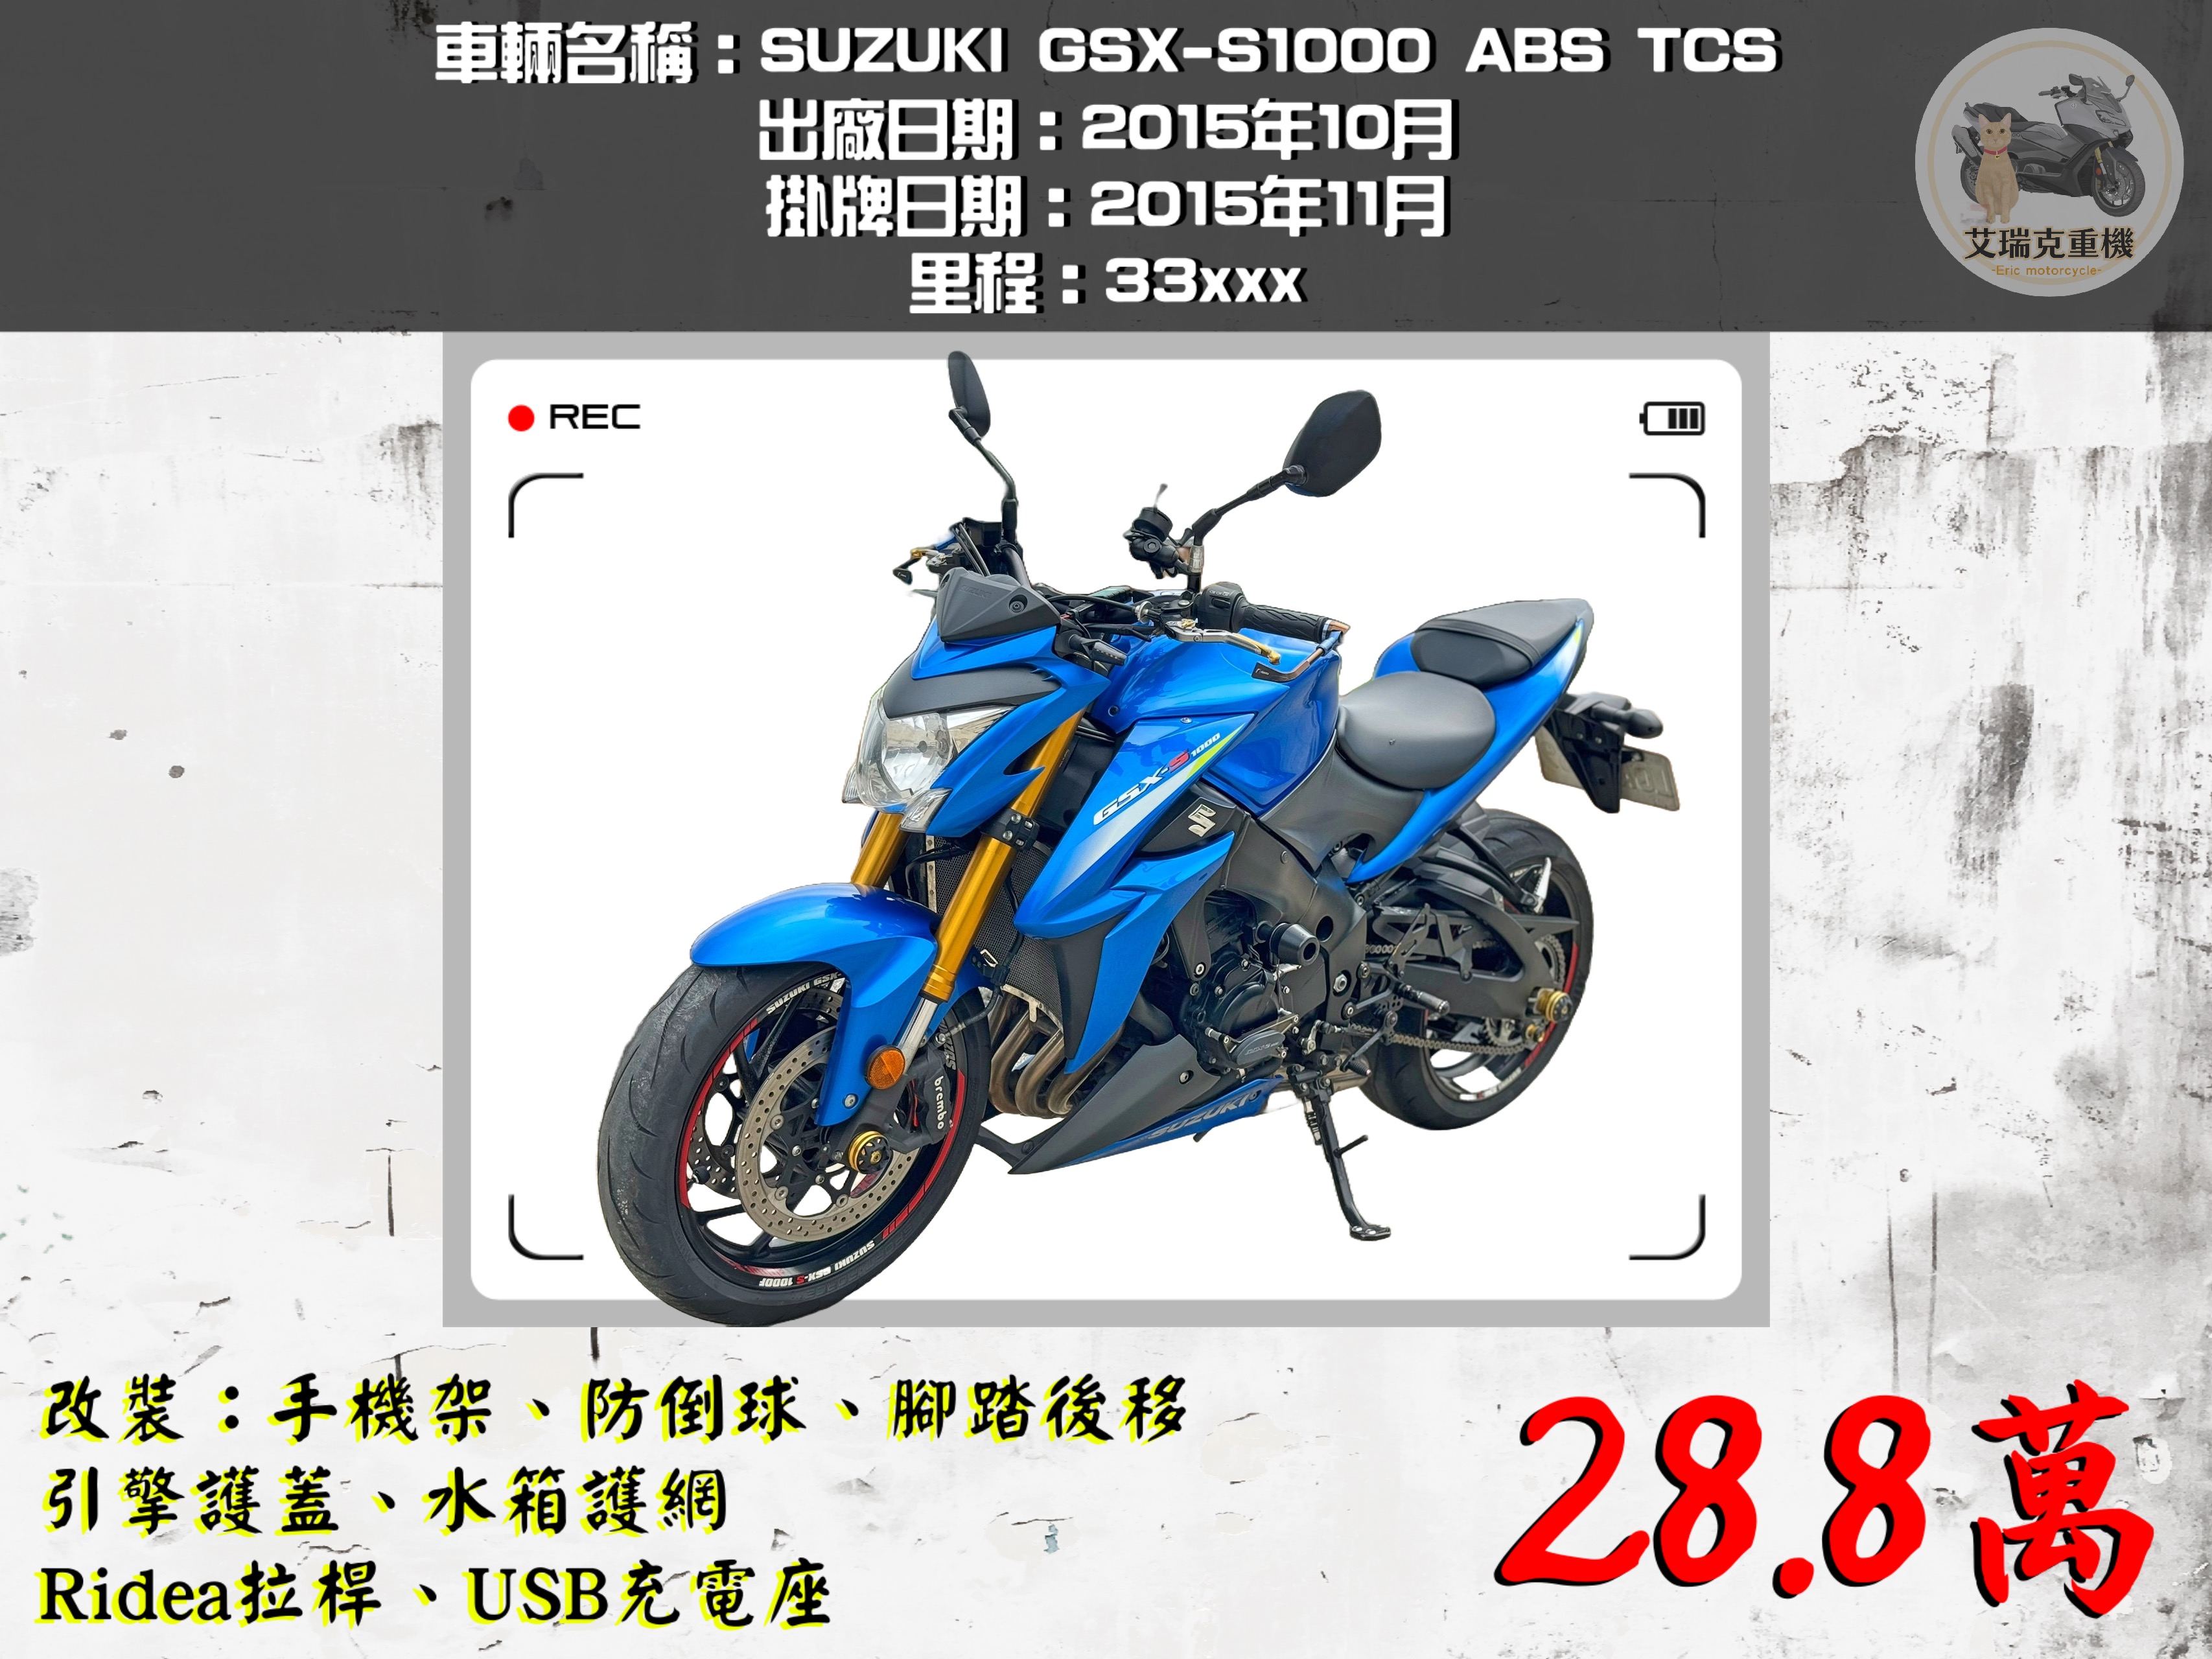 SUZUKI GSX-S1000 - 中古/二手車出售中 SUZUKI GSX-S1000 ABS TCS | 艾瑞克重機